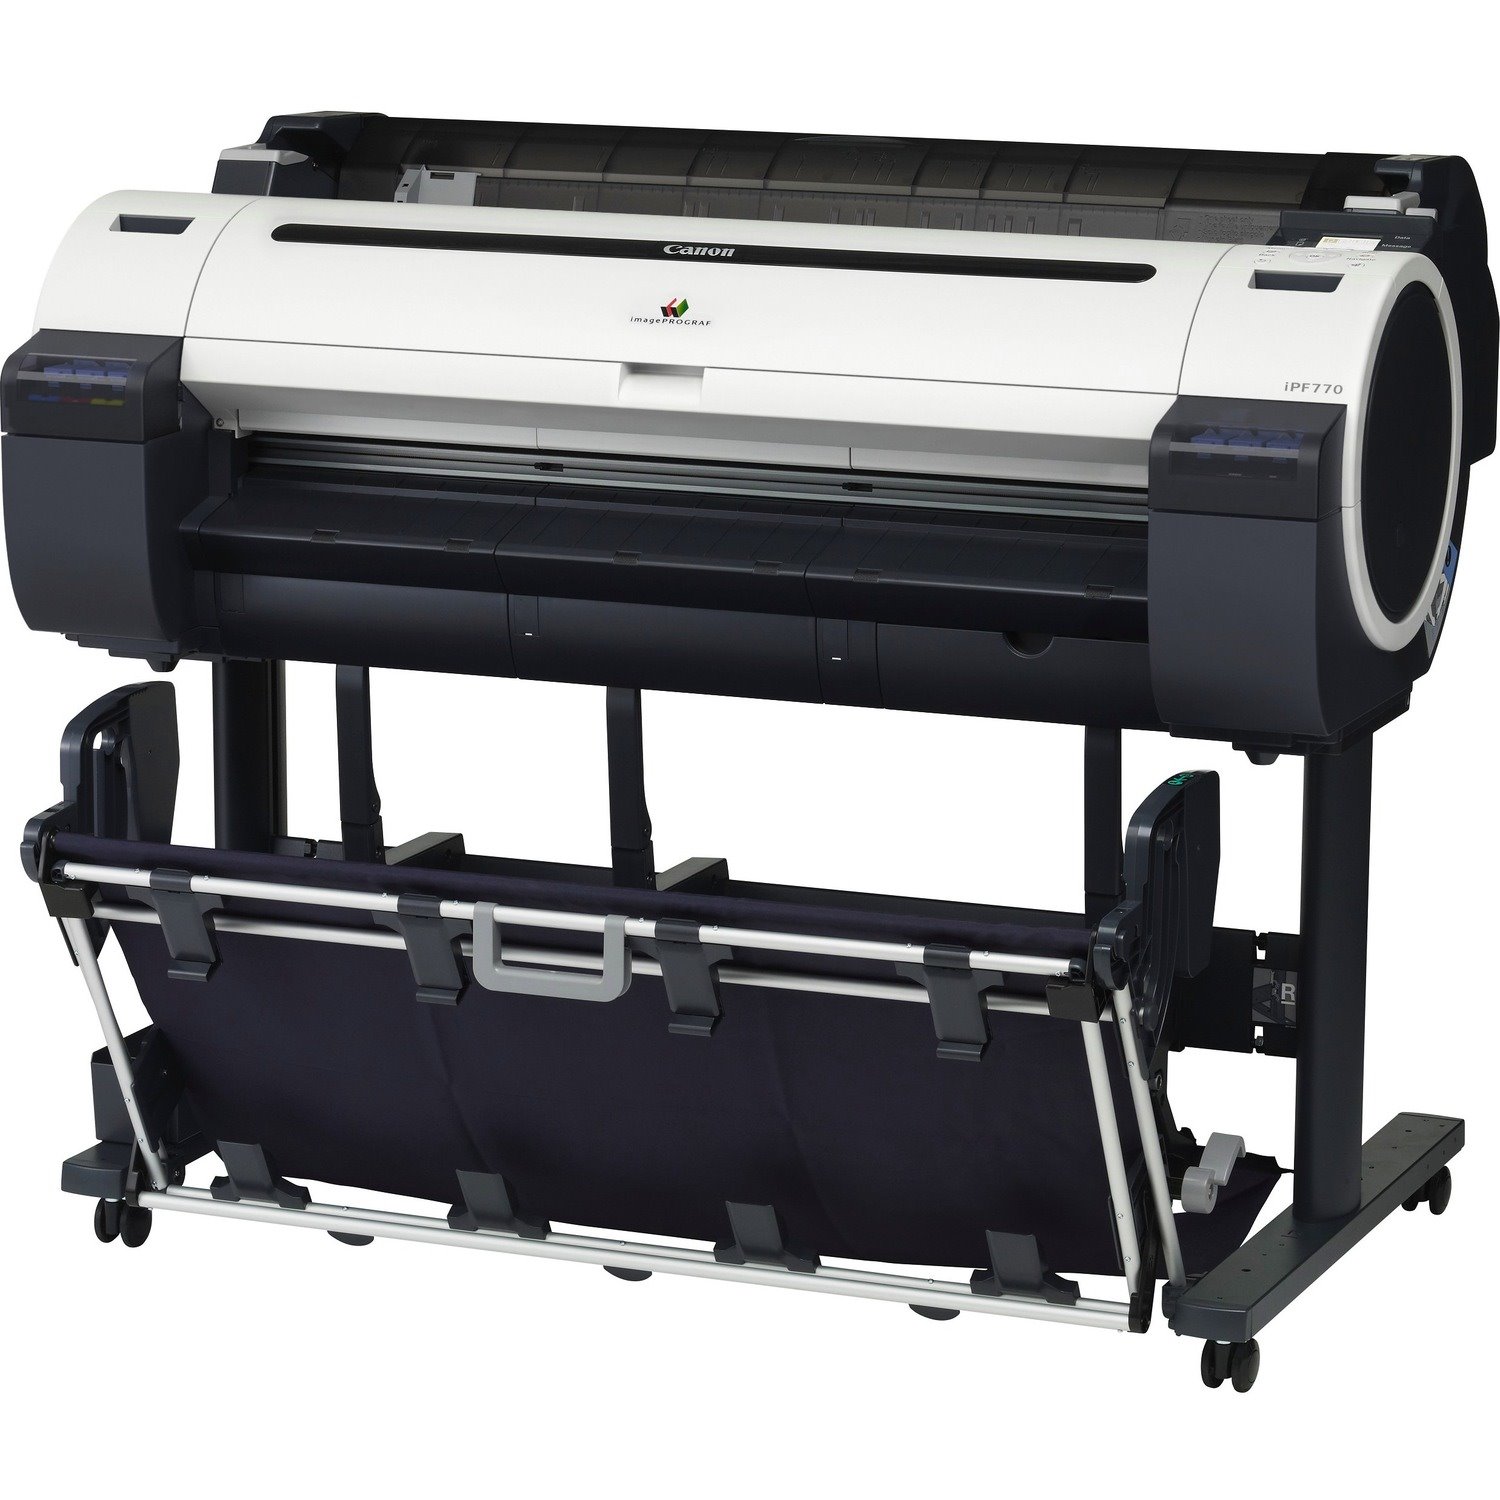 Canon imagePROGRAF iPF770 Inkjet Large Format Printer - 36" Print Width - Color